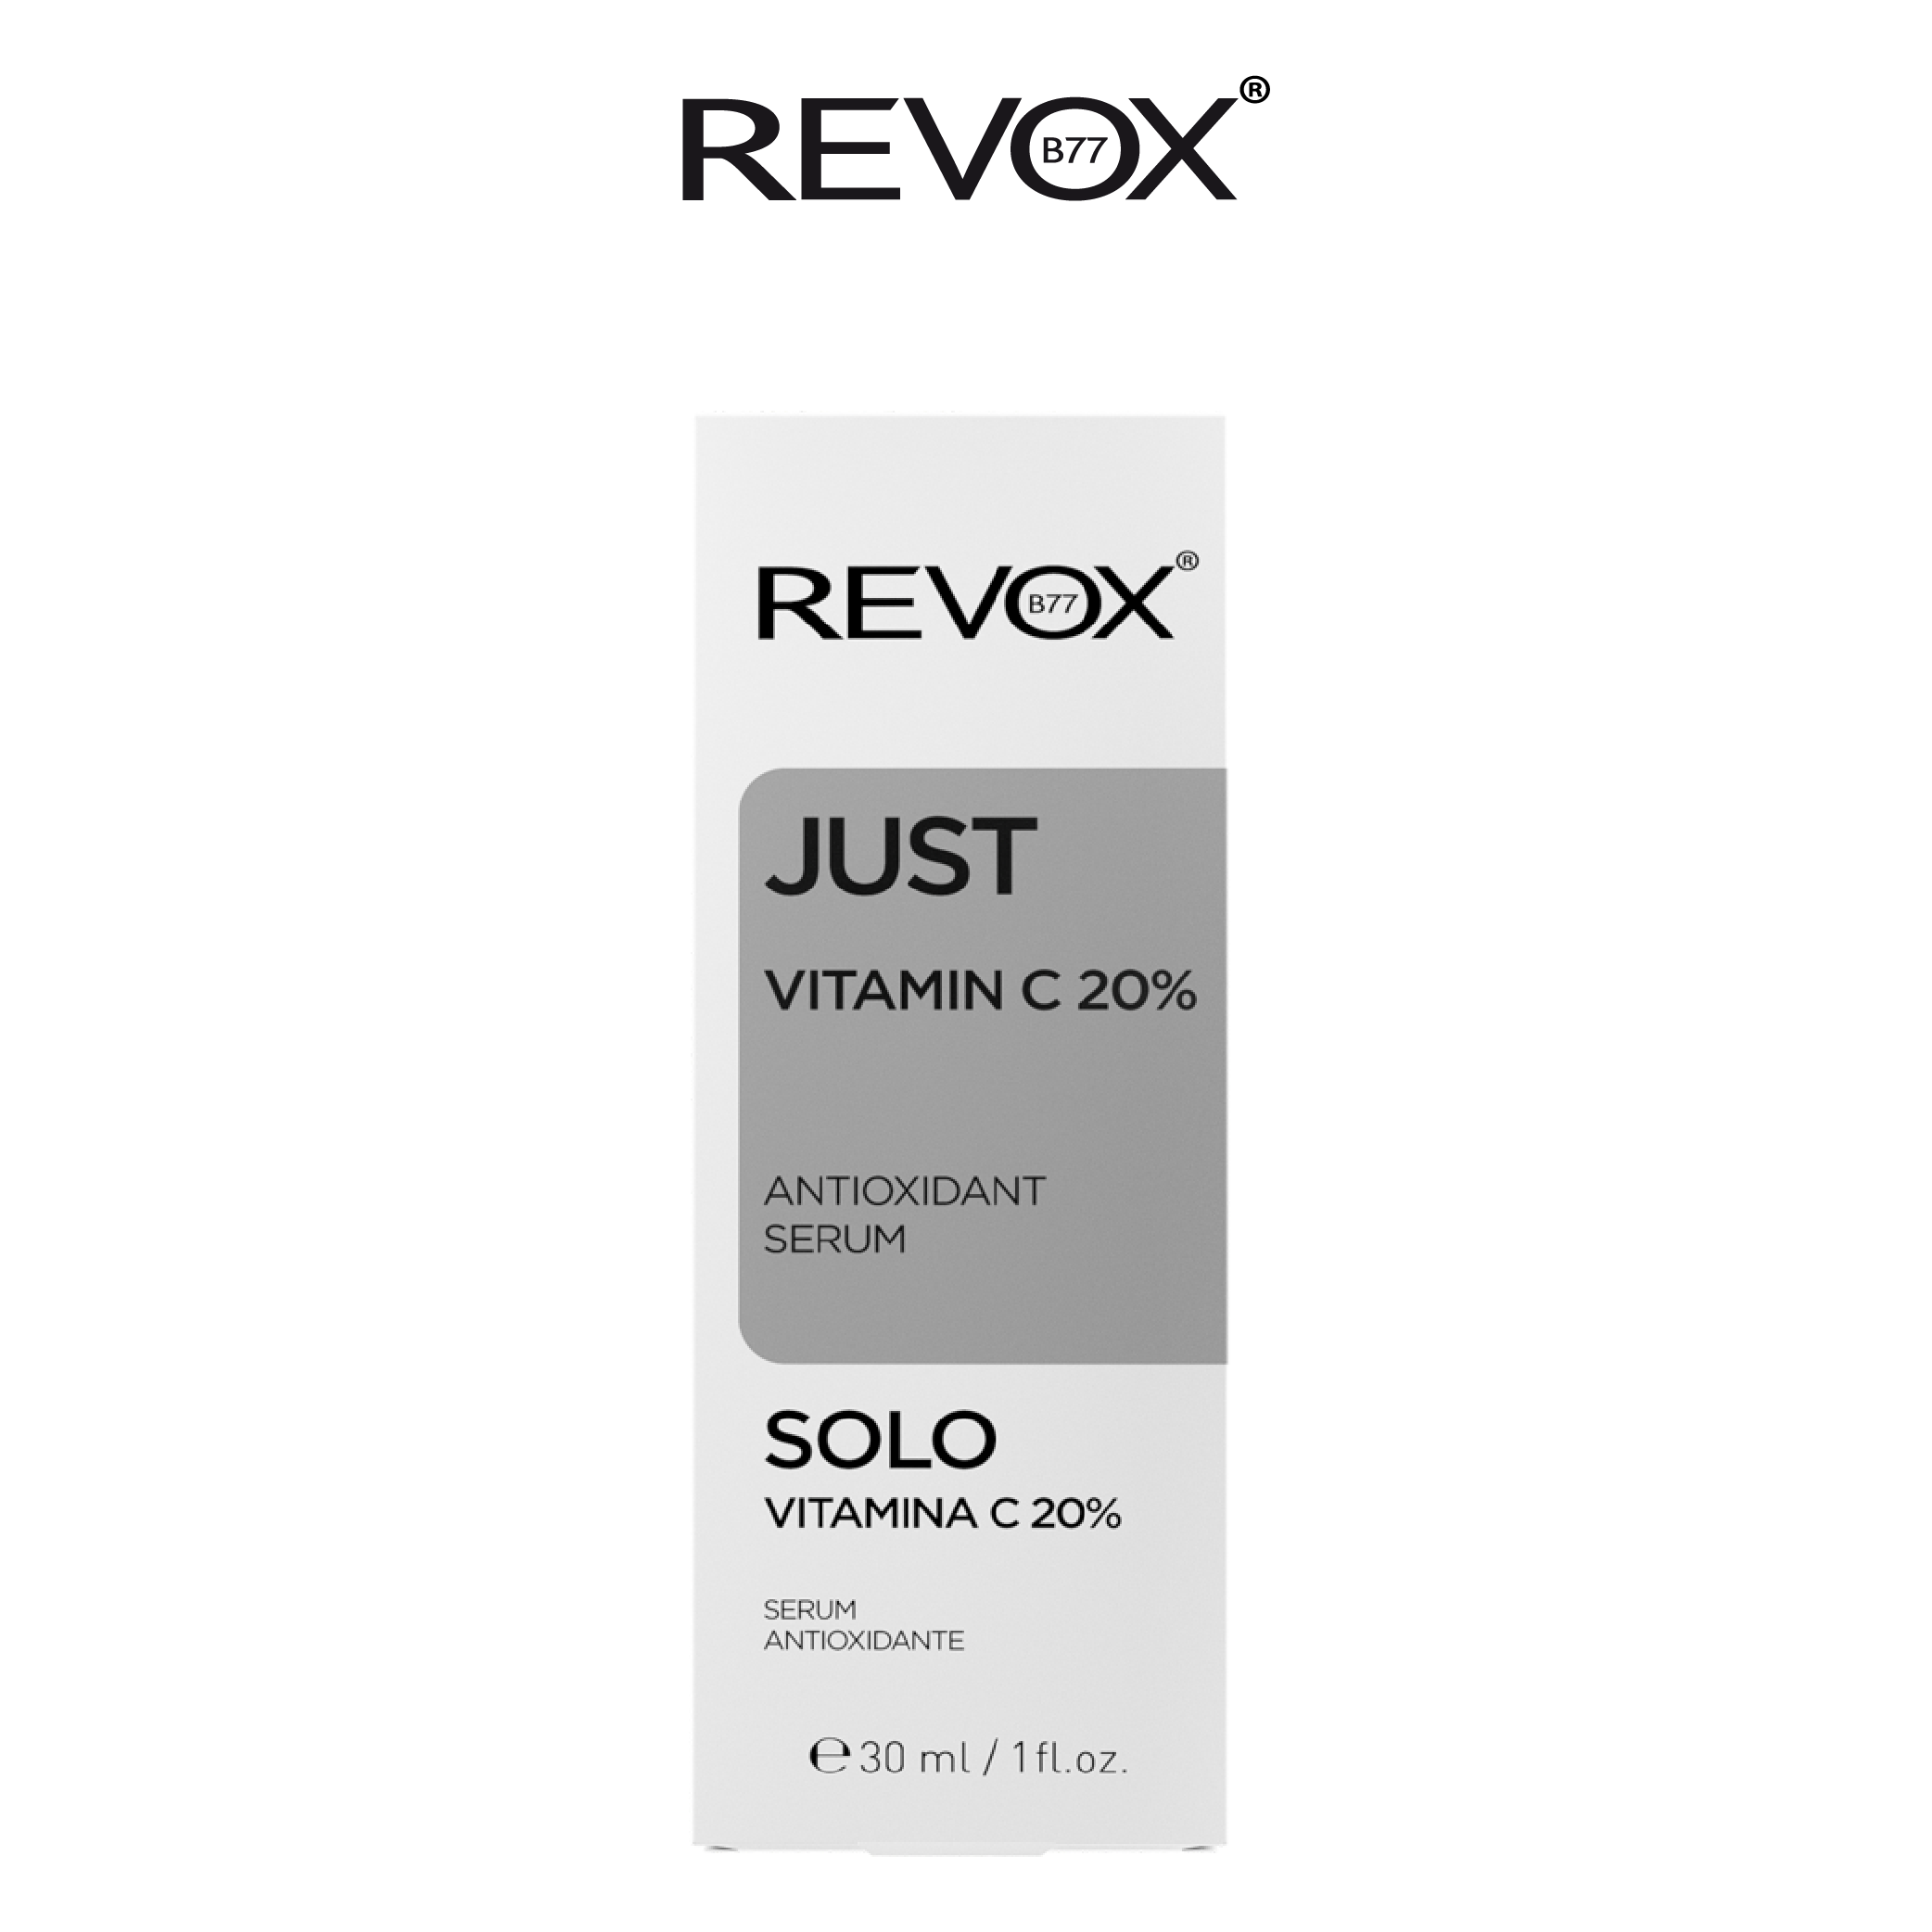 Serum ngăn ngừa Oxy hóa làm sáng da cho mặt và cổ Revox B77 Just - Vitamin C 20%